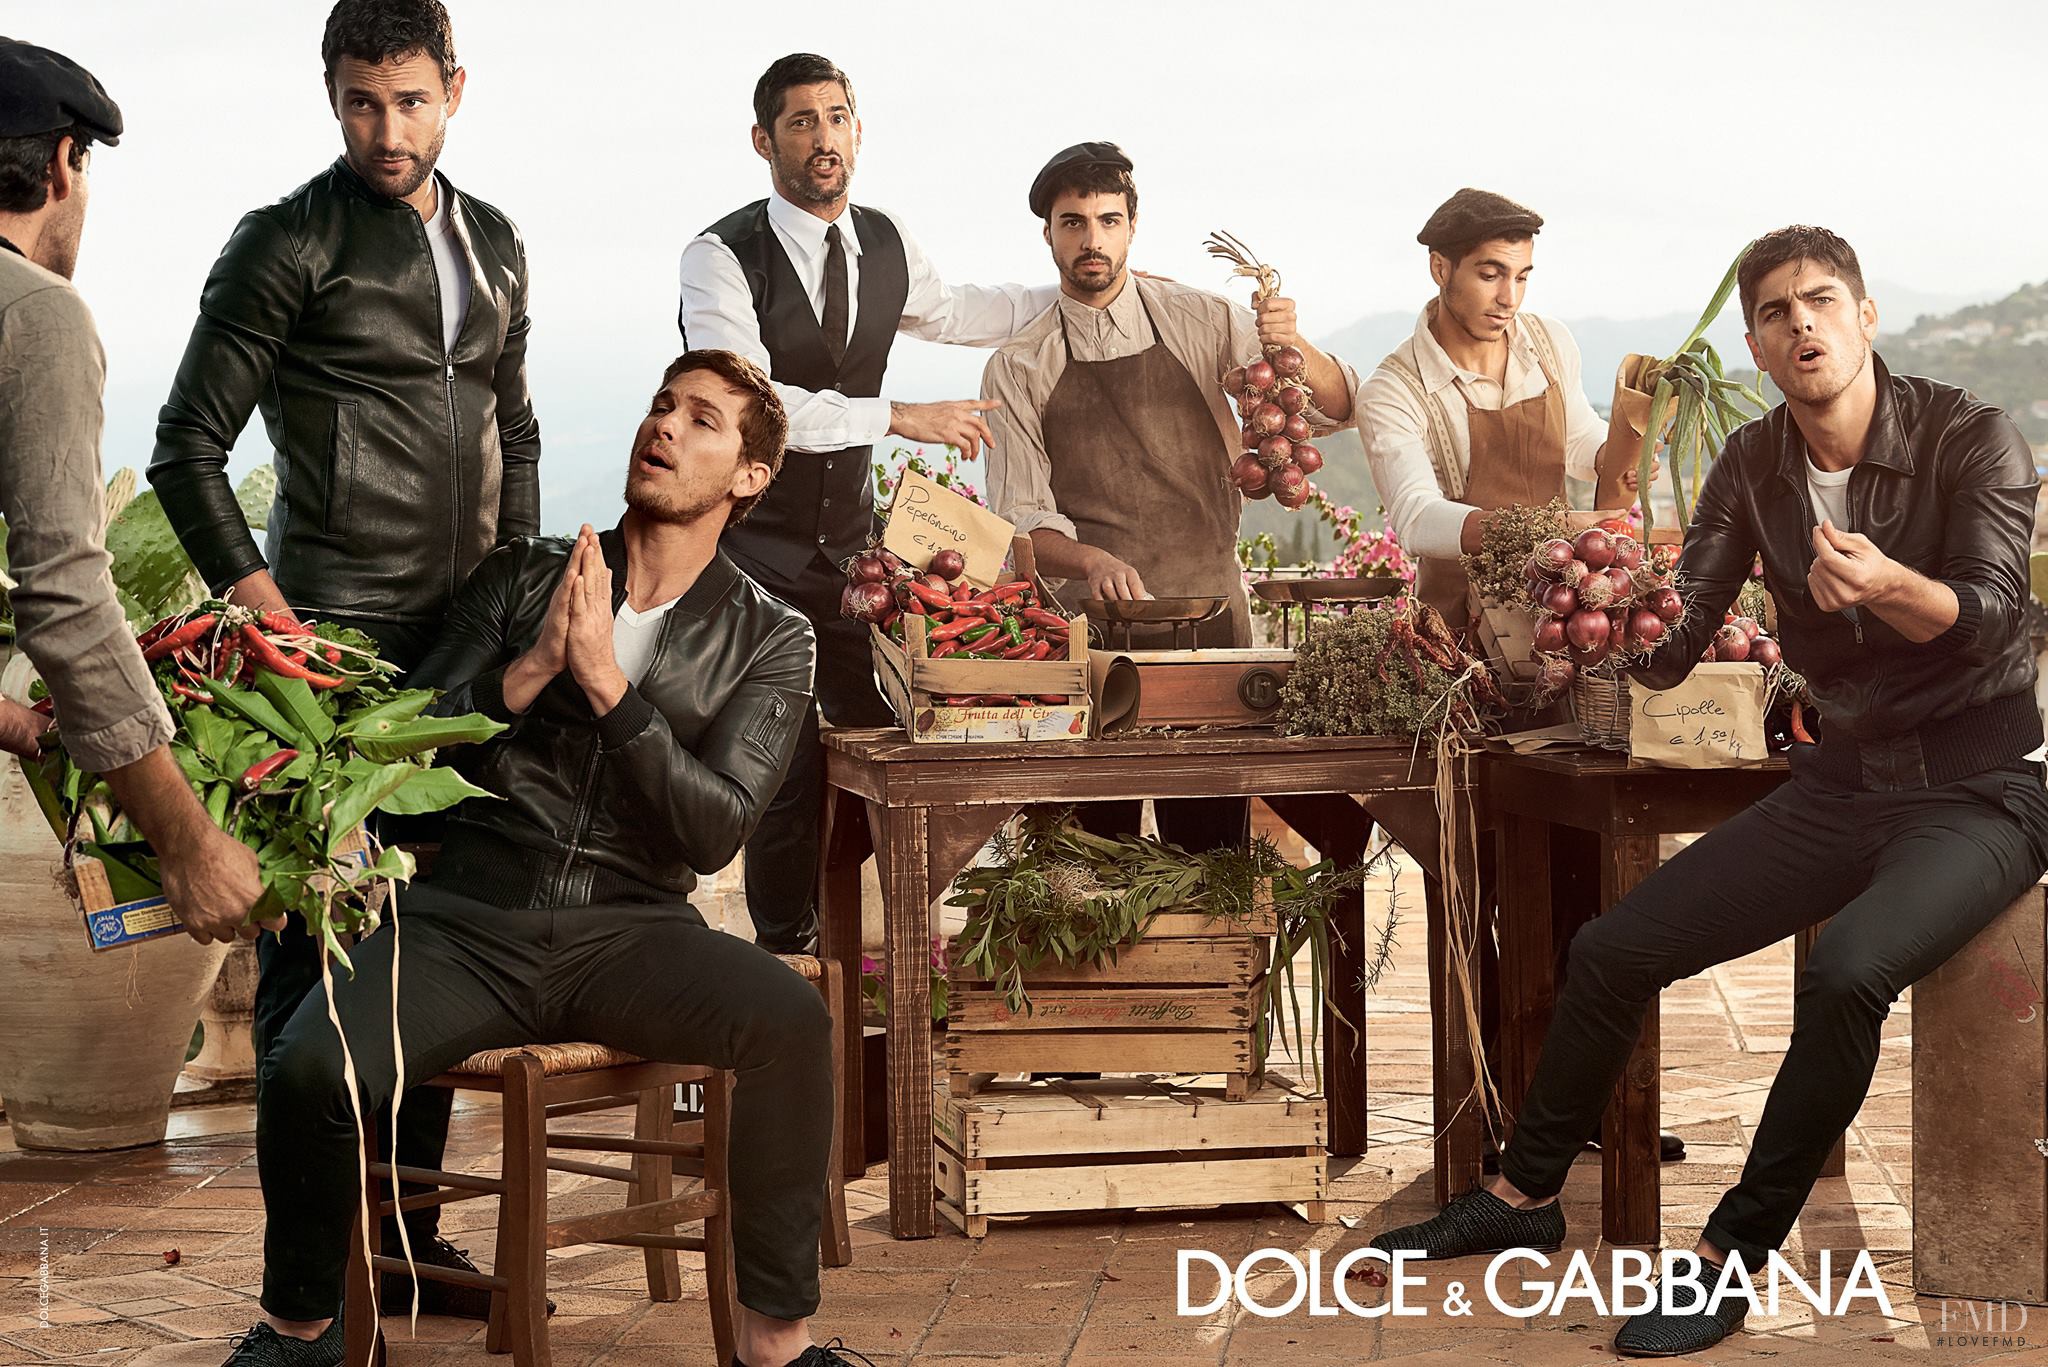 Реклама dolce gabbana. Итальянцы Дольче Габбана. Реклама Дольче Габбана Сицилия. Рекламная кампания Dolce Gabbana. Дольче Габбана итальянская семья.